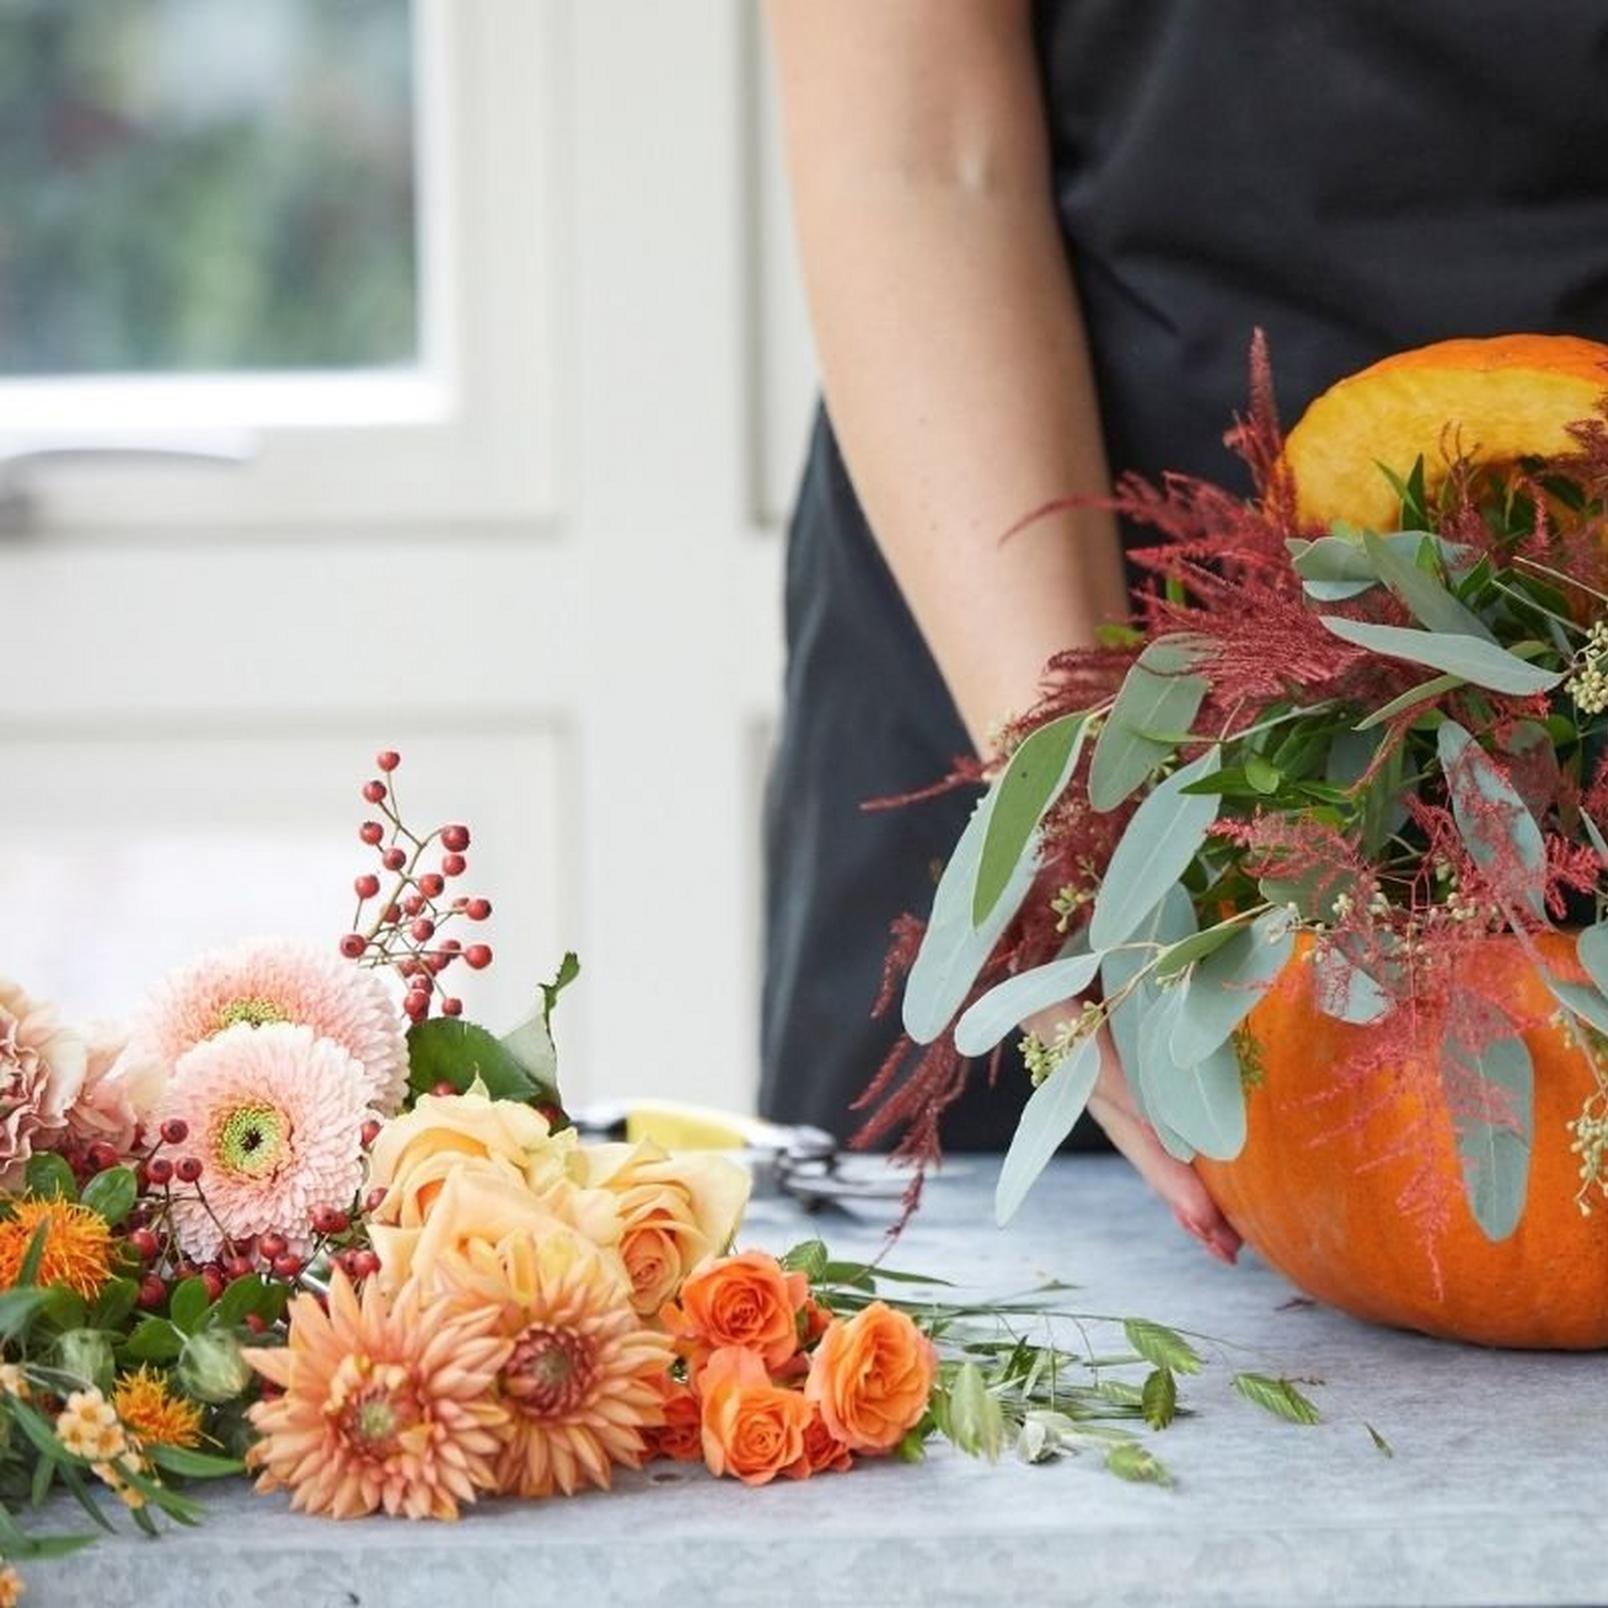 florist-adding-flowers-to-pumpkin-arrangement